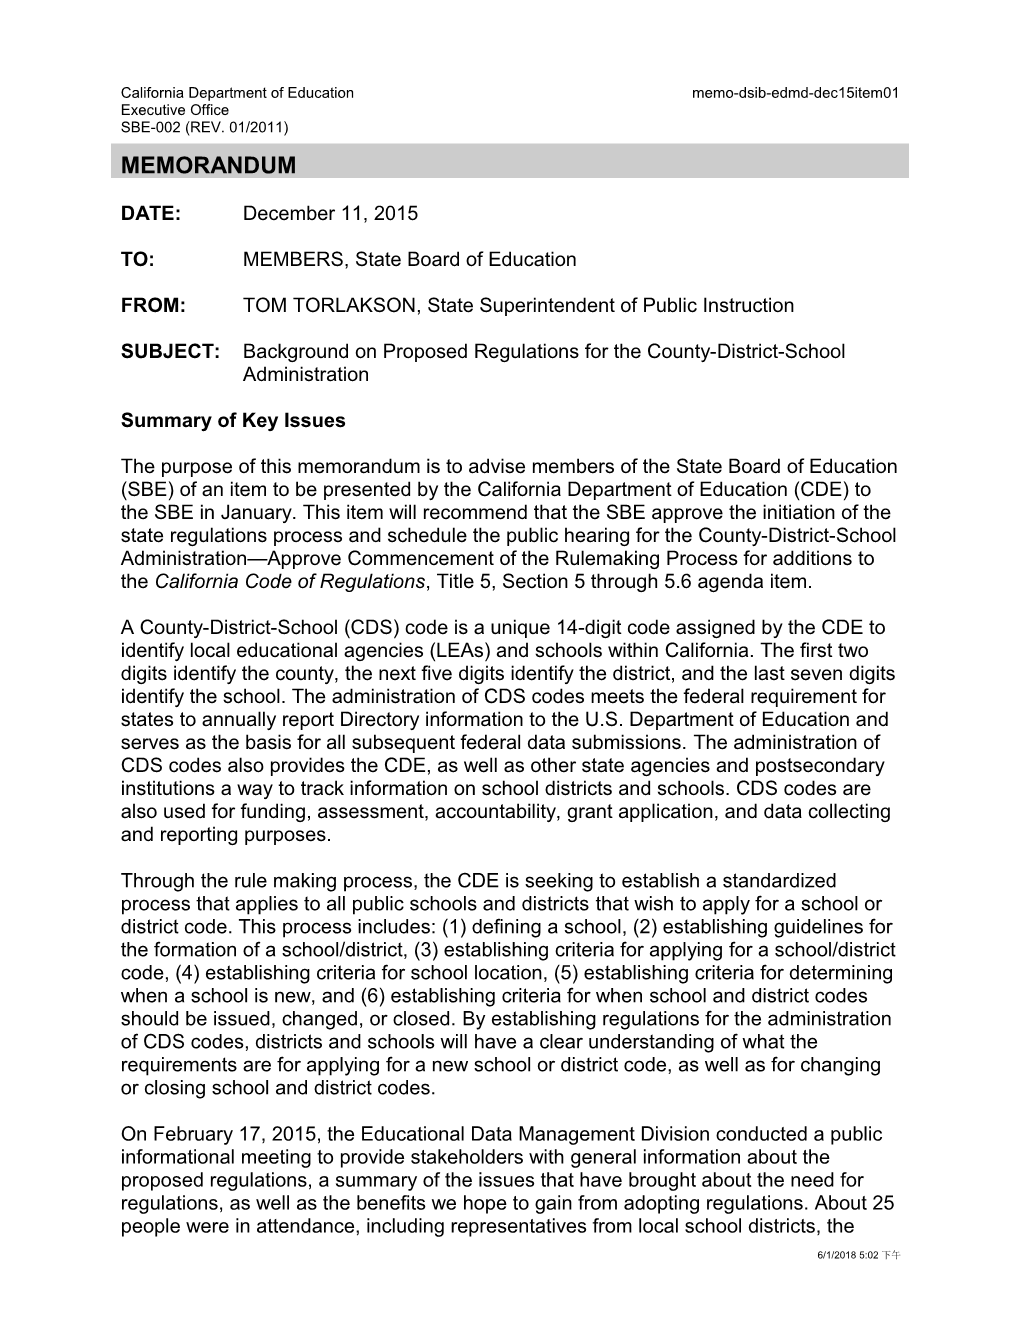 December 2015 Memo EDMD Item 01 - Information Memorandum (CA State Board of Education)